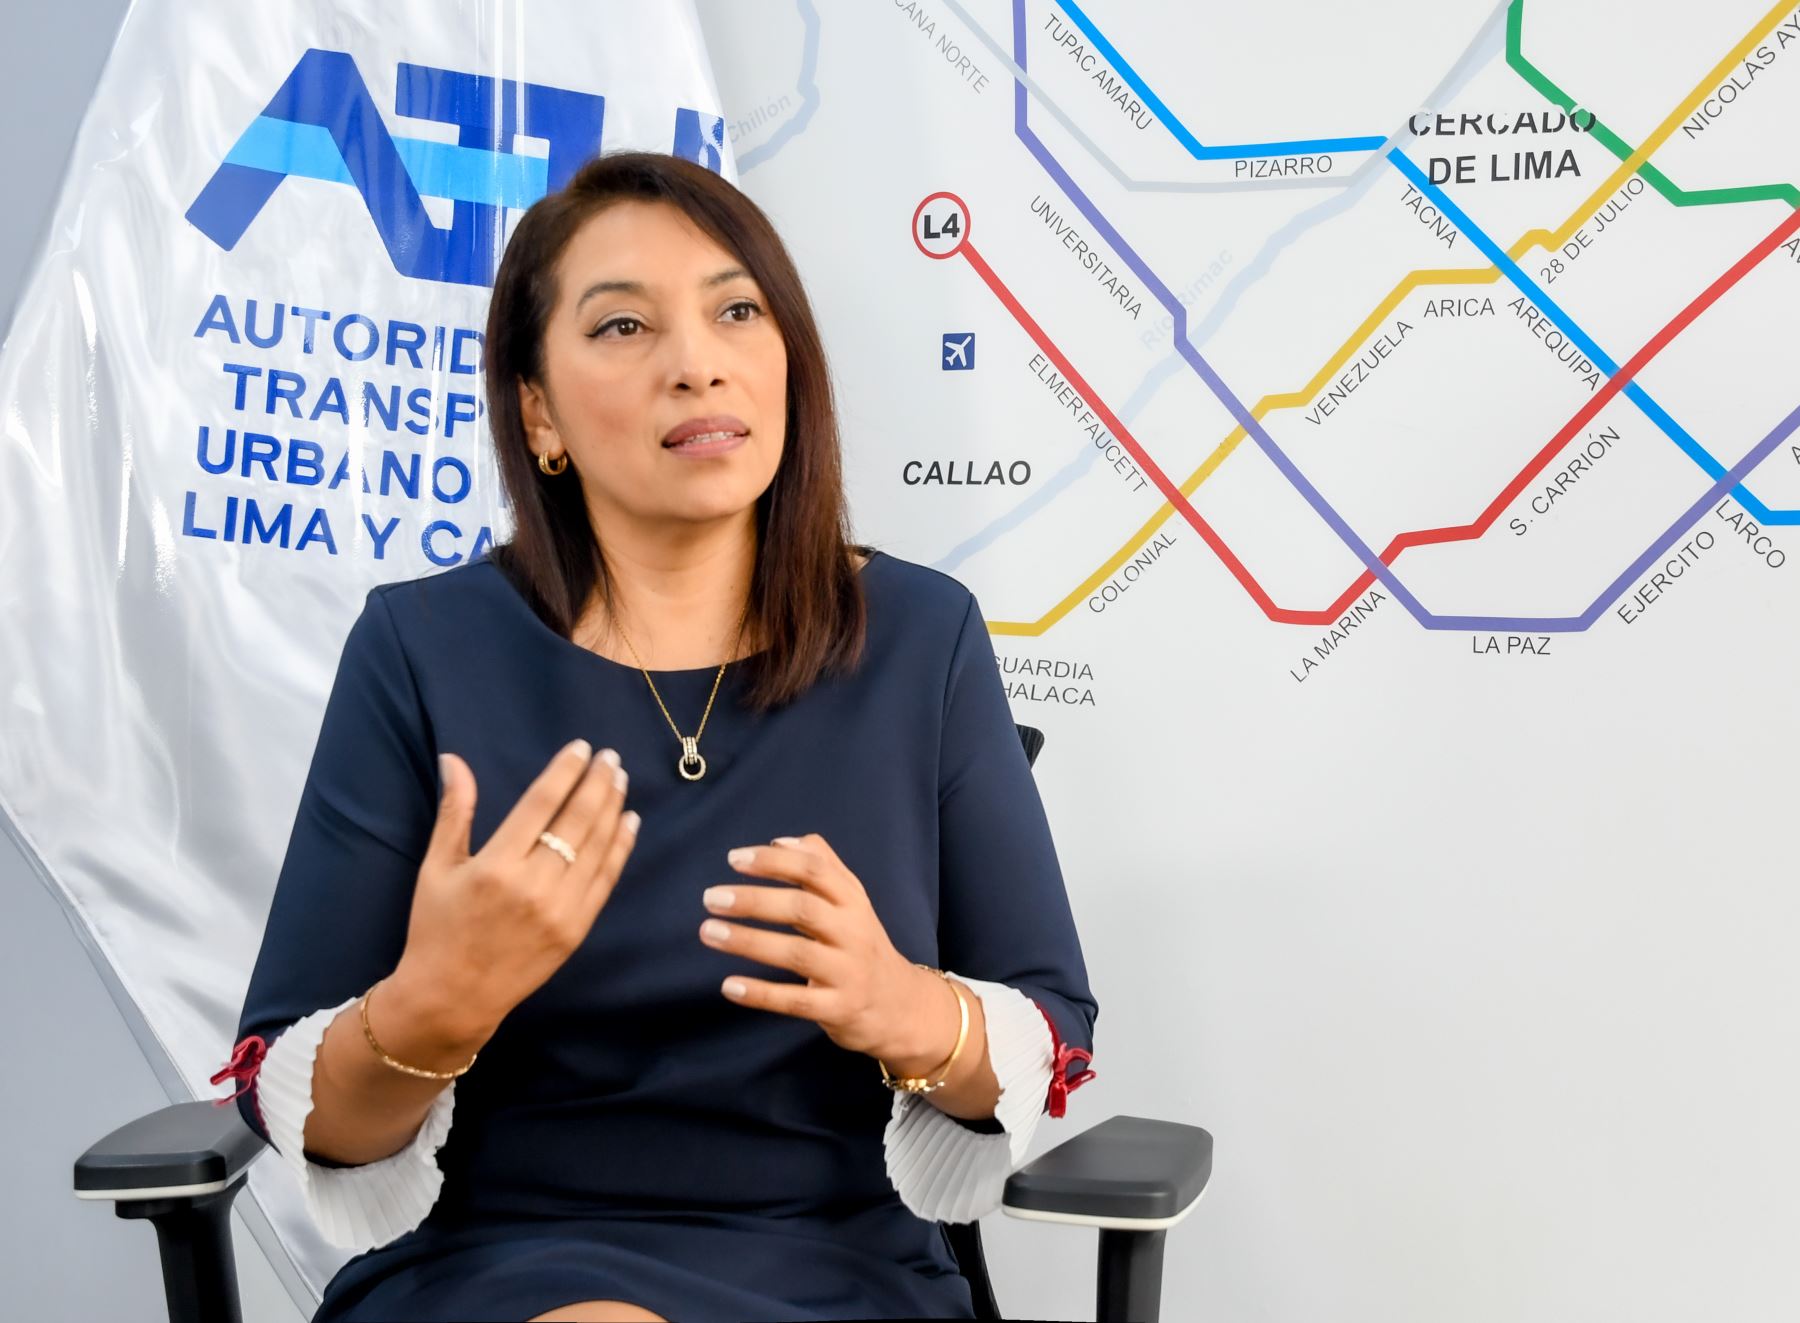 La presidenta de la Autoridad de Transporte Urbano para Lima y Callao (ATU), Marybel Vidal Matos, anuncia cambios en El Metropolitano a fin de mejorar el servicio y evitar demora en la espera de los buses. Foto:ATU/Difusión